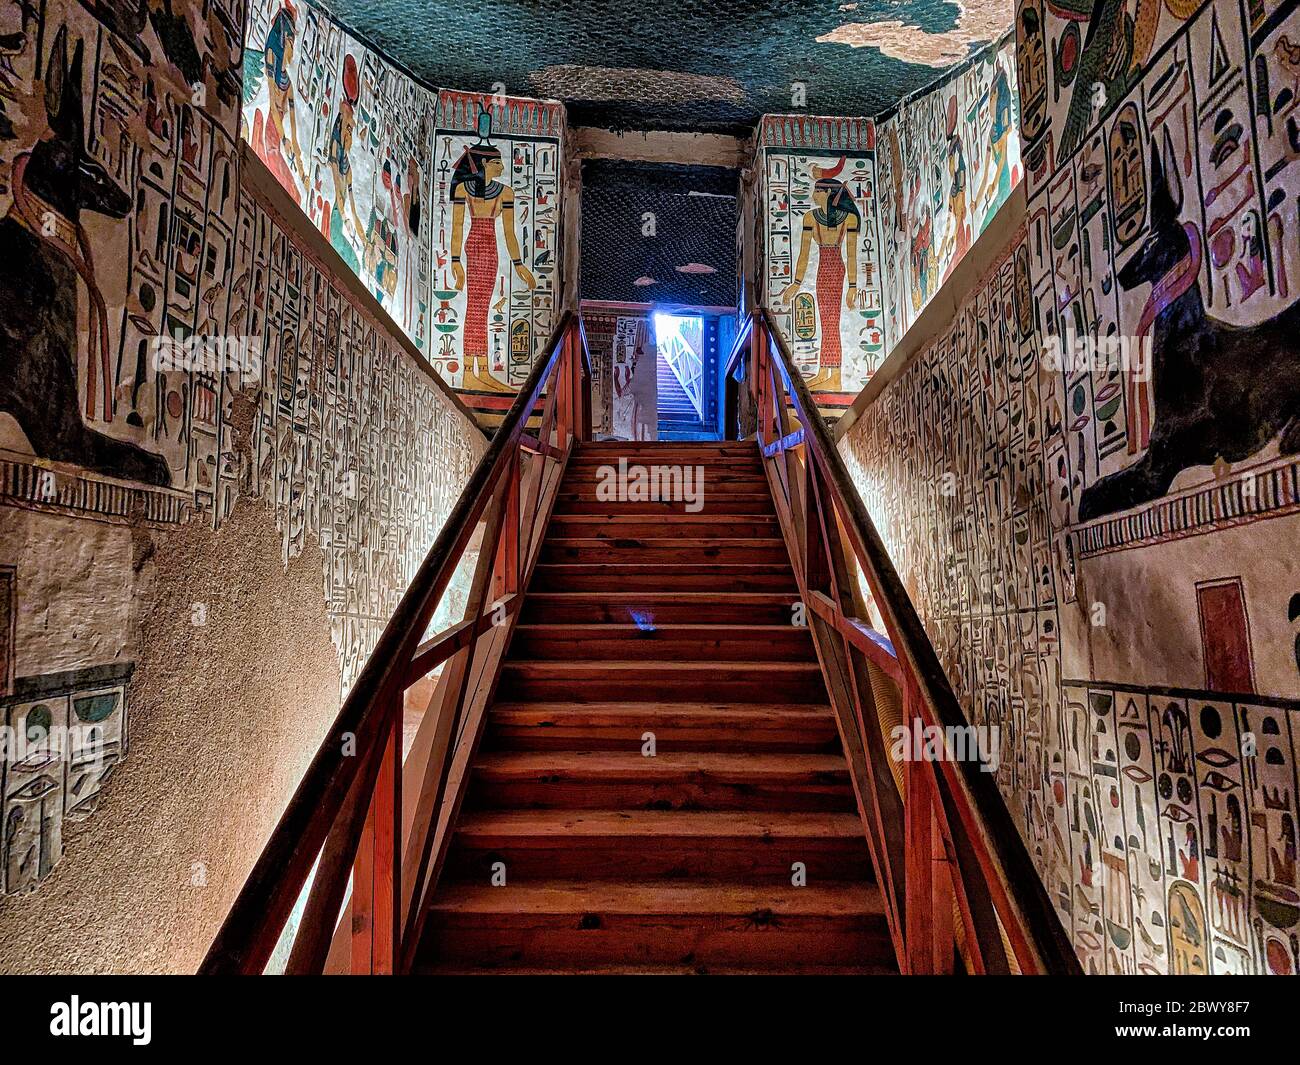 Les murs est et Ouest inférieurs montrent presque des images de miroir du jackal noir Anubis couché sur un sanctuaire de chaque côté de la rampe intérieure et de l'escalier Banque D'Images